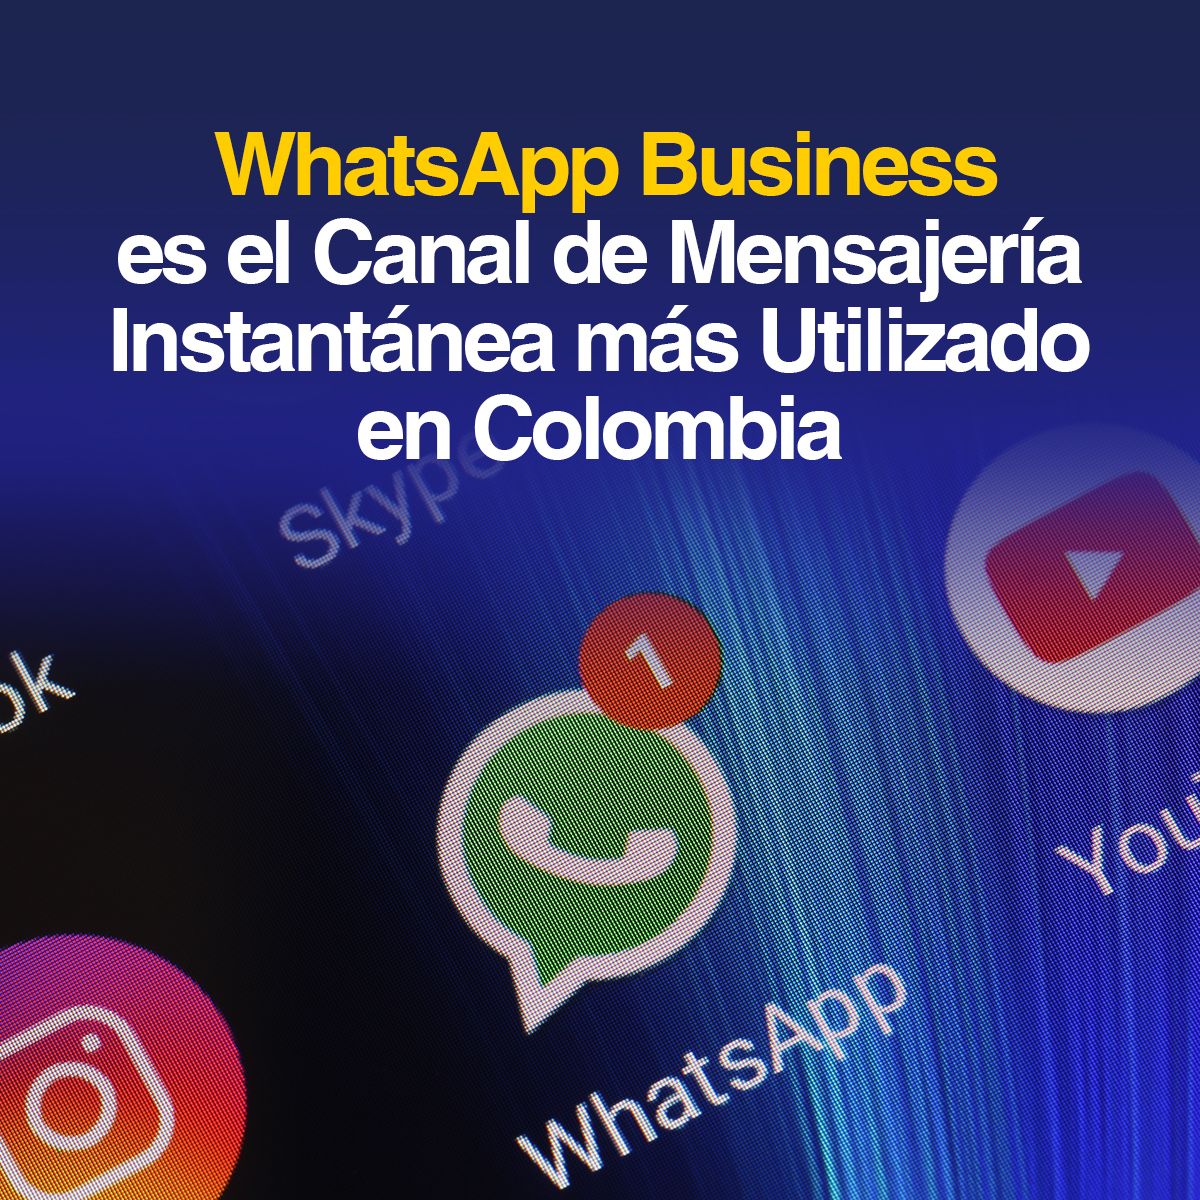 WhatsApp Business es el Canal de Mensajería Instantánea más Utilizado en Colombia